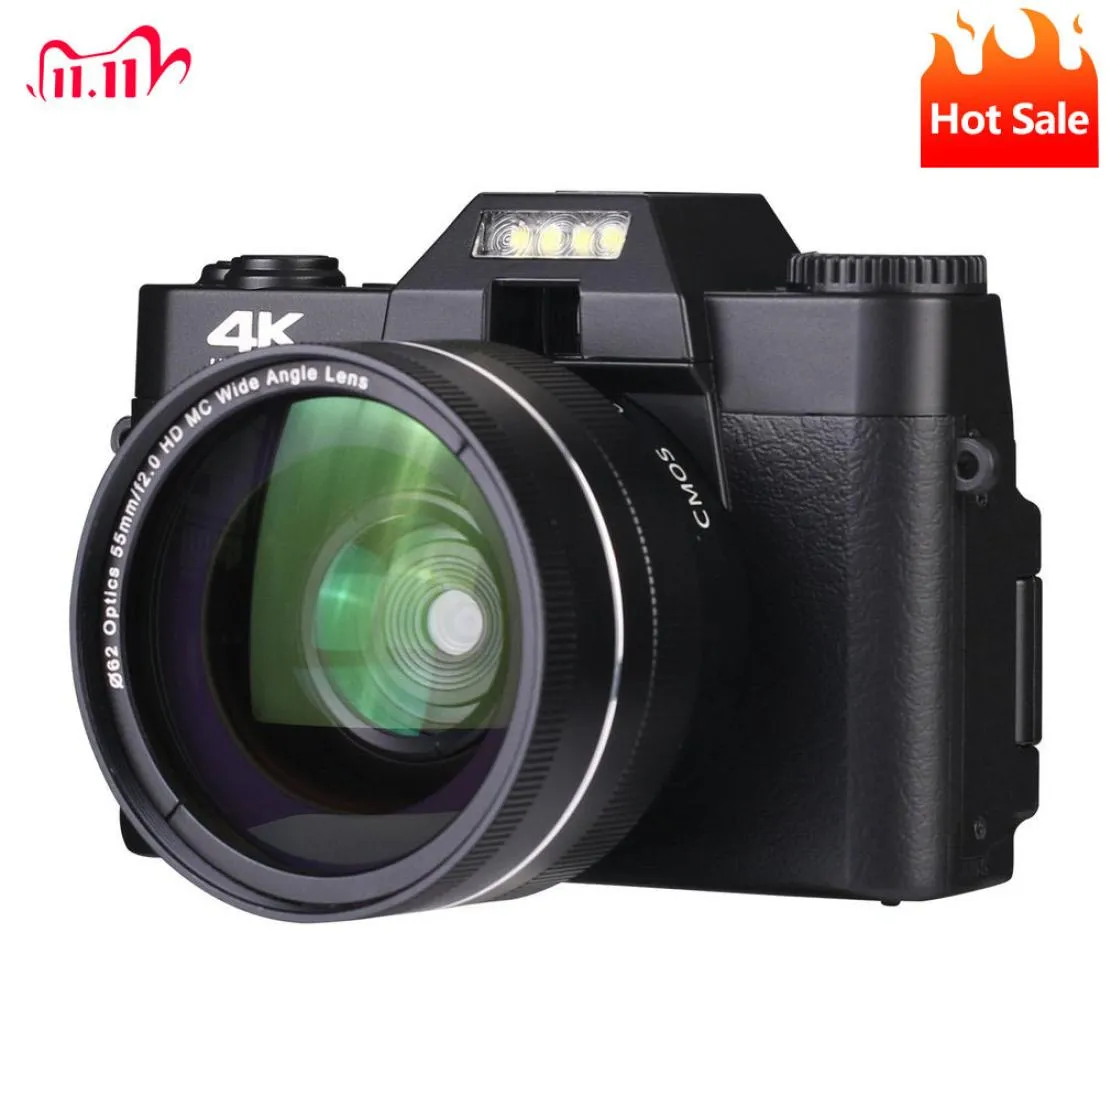 デジタルカメラ4K HD HALFDSLRプロフェッショナル16倍の広角レンズマクロWiFiタイムラプシューティング2211017880887